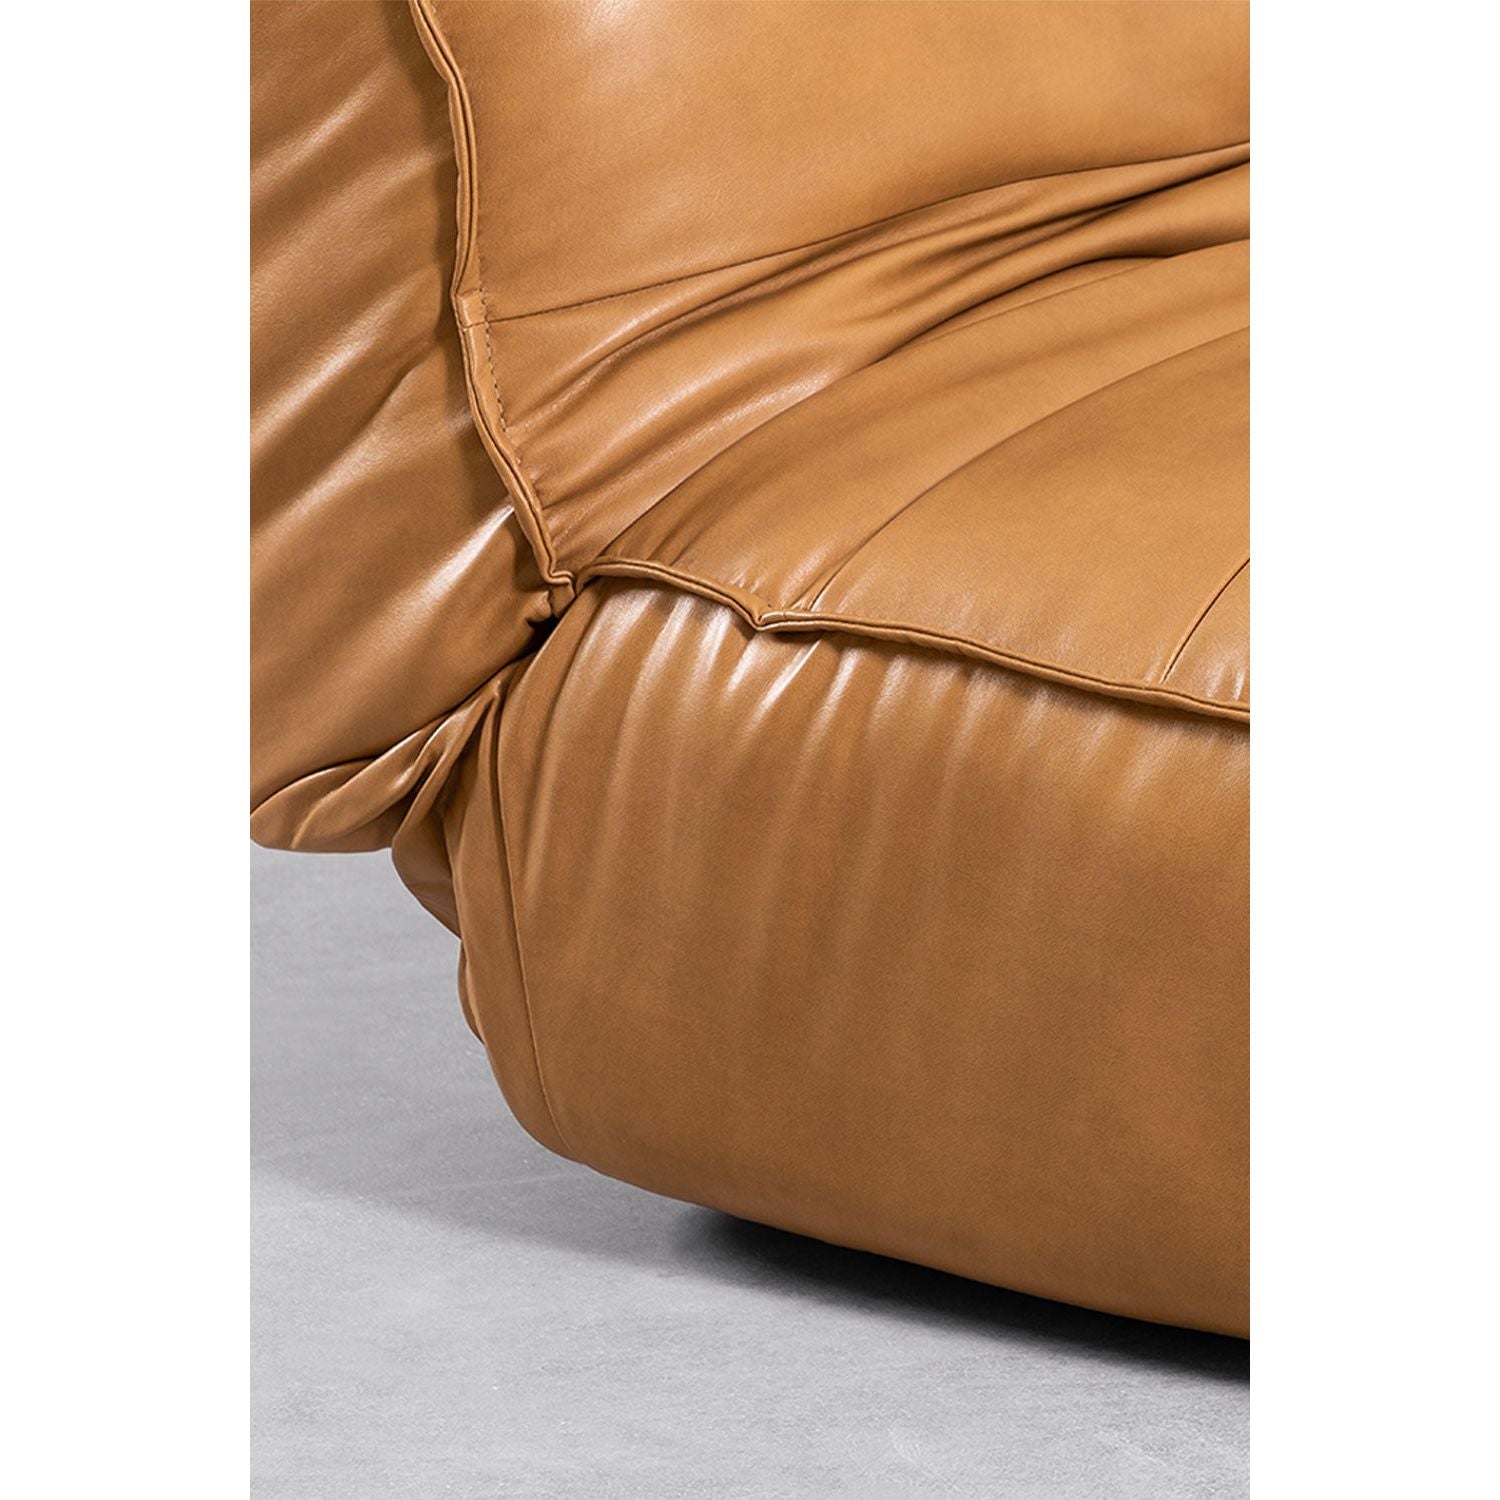 3-vietė sofa MATI, ruda spalva, dirbtinė oda